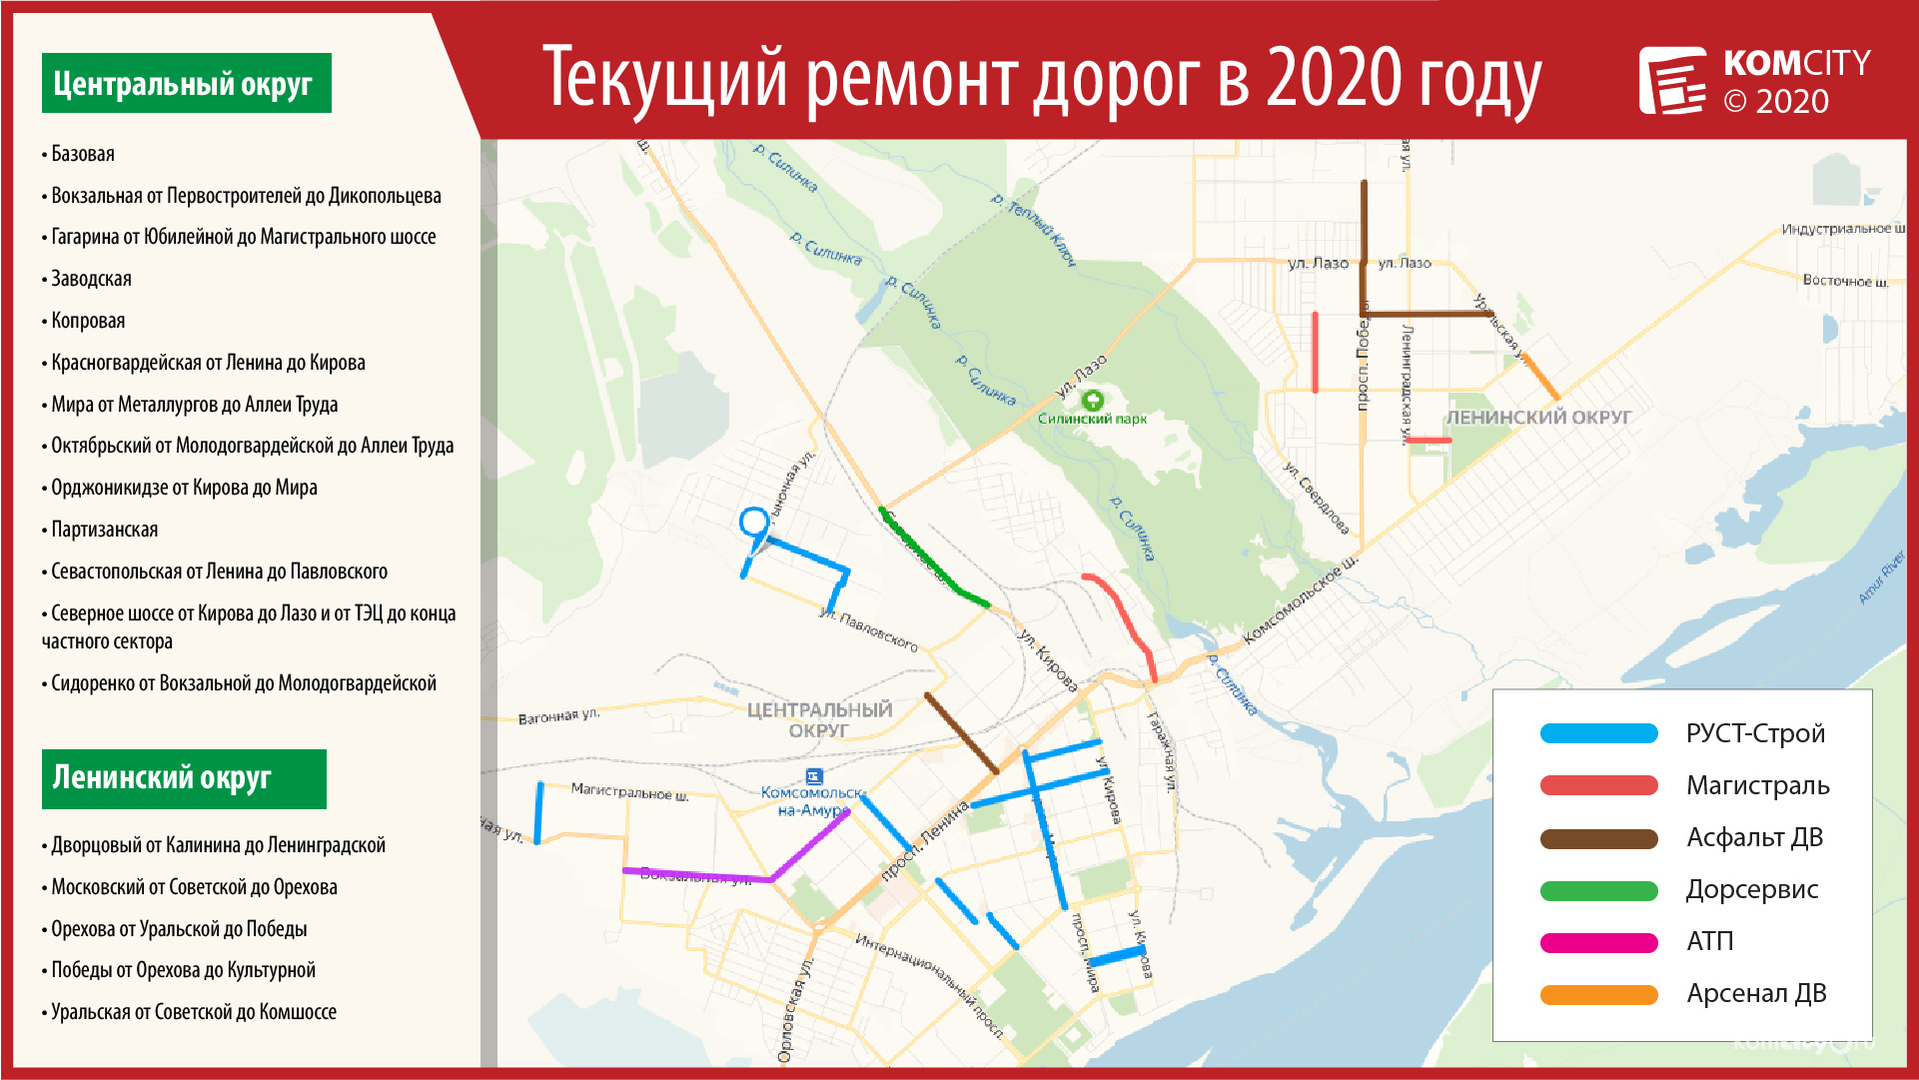 Определены подрядчики, которые займутся текущим ремонтом 18-ти дорог Комсомольска-на-Амуре в этом году